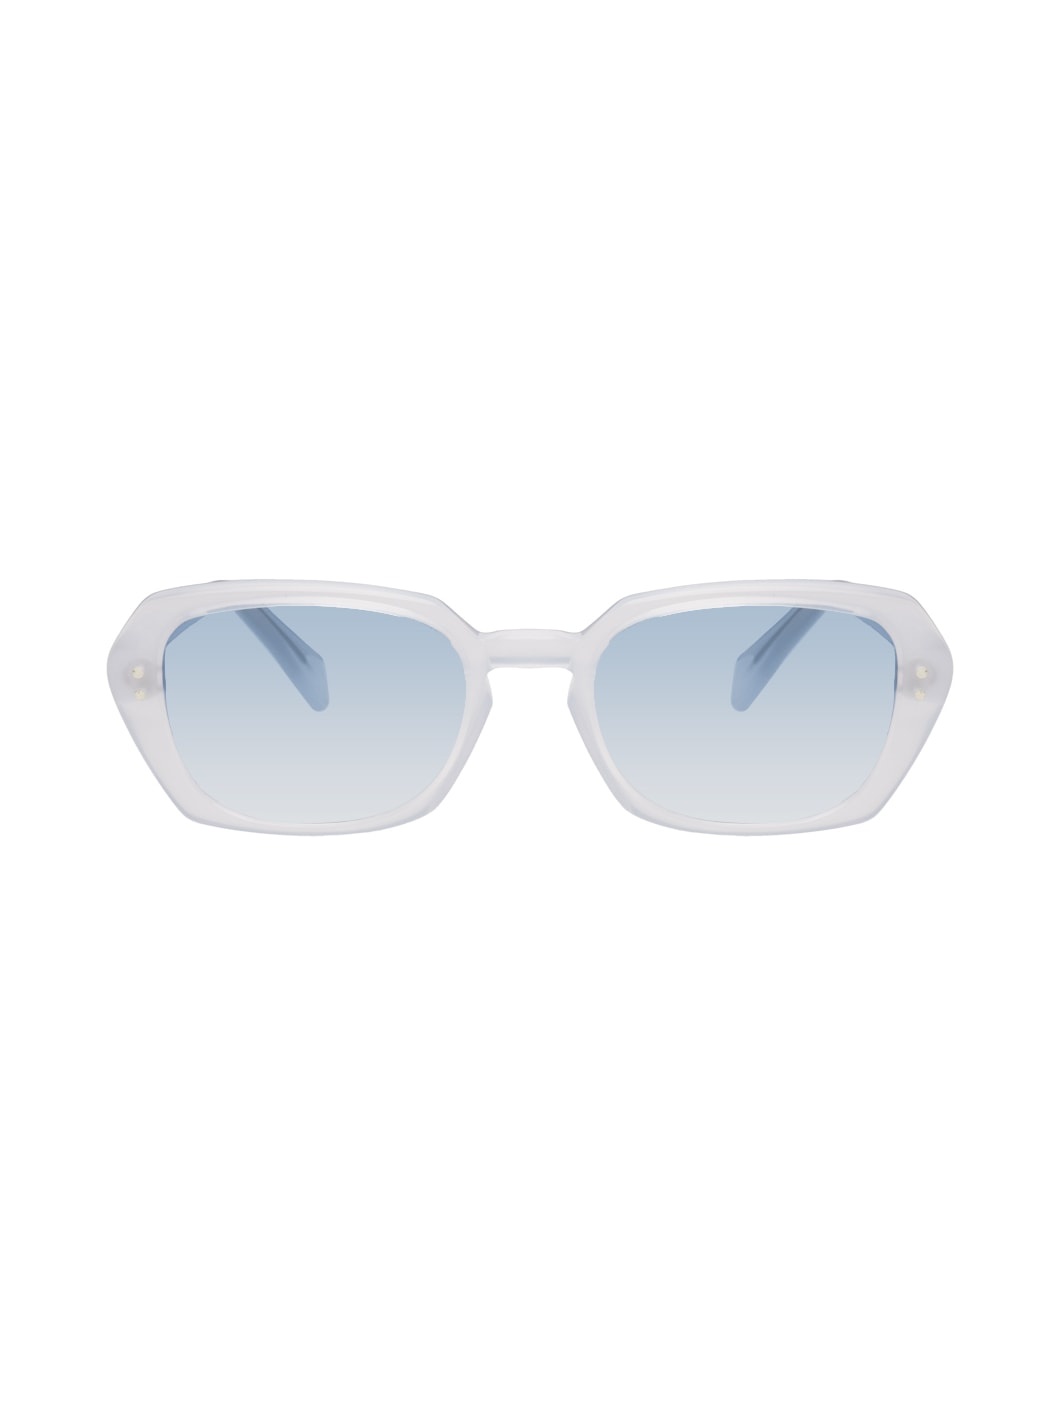 Blue Earth Sunglasses - 2